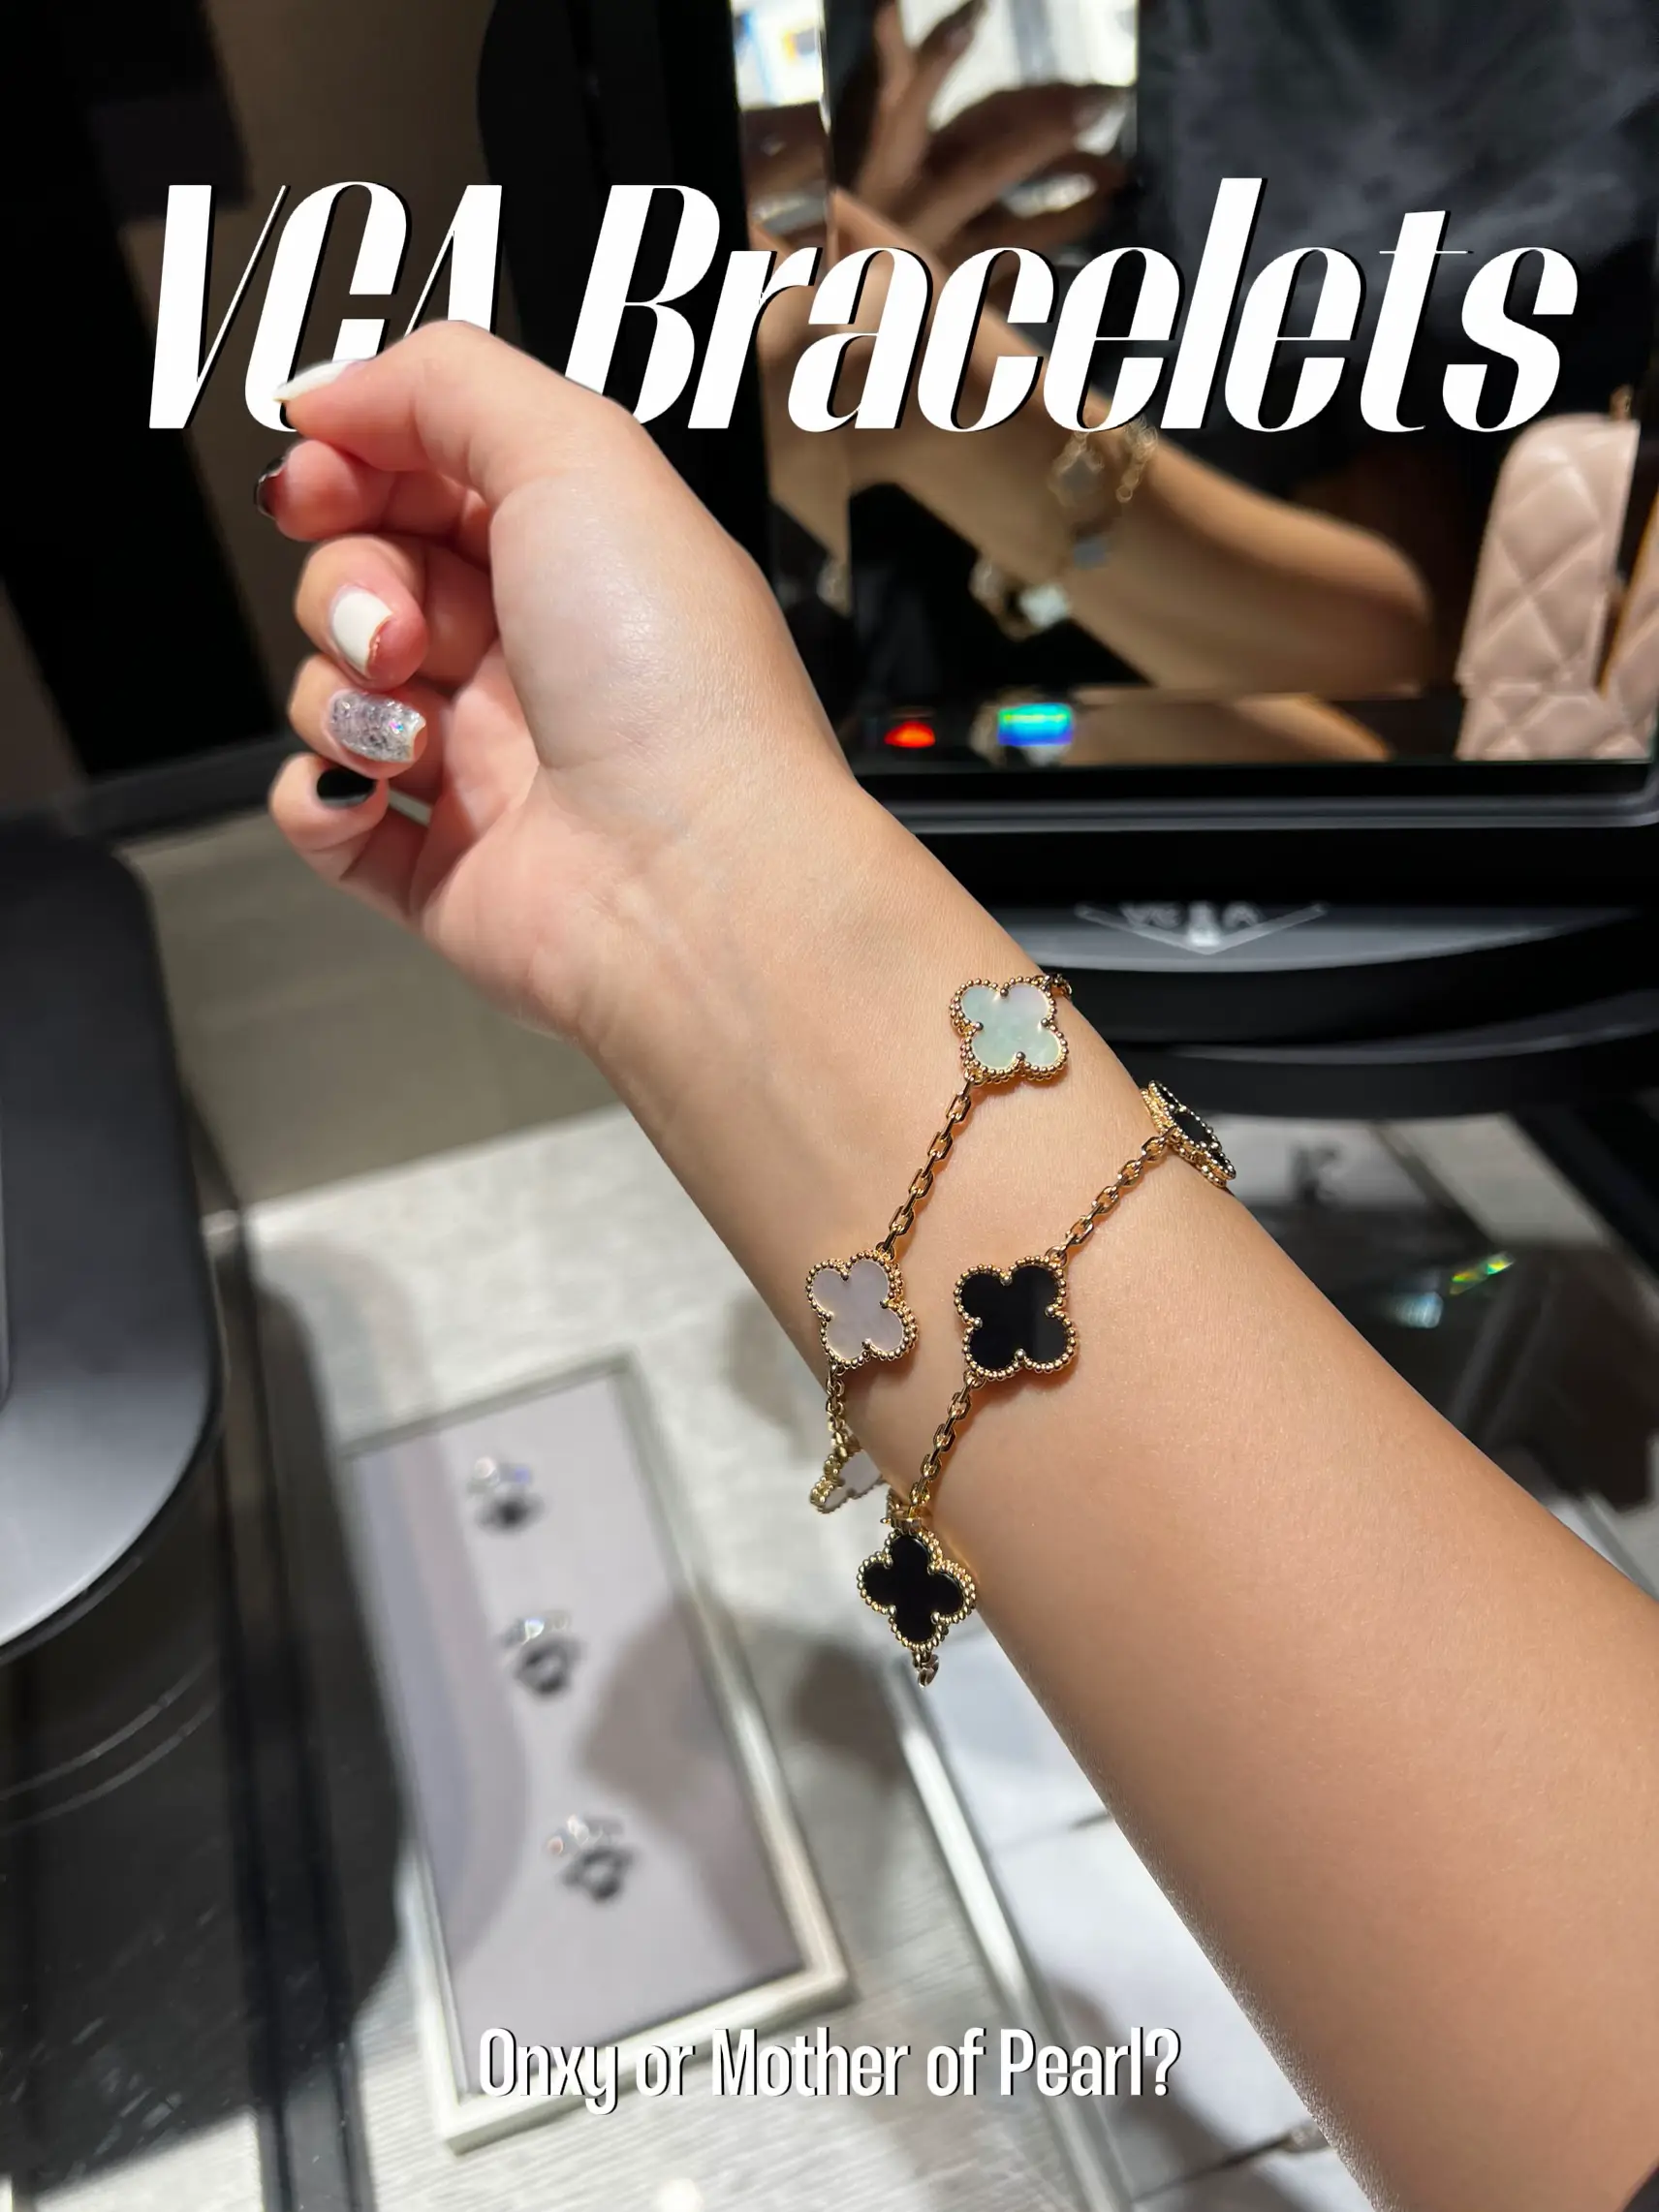 My first Van Cleef & Arpels bracelet 🖤🤍, Gallery posted by gisellej